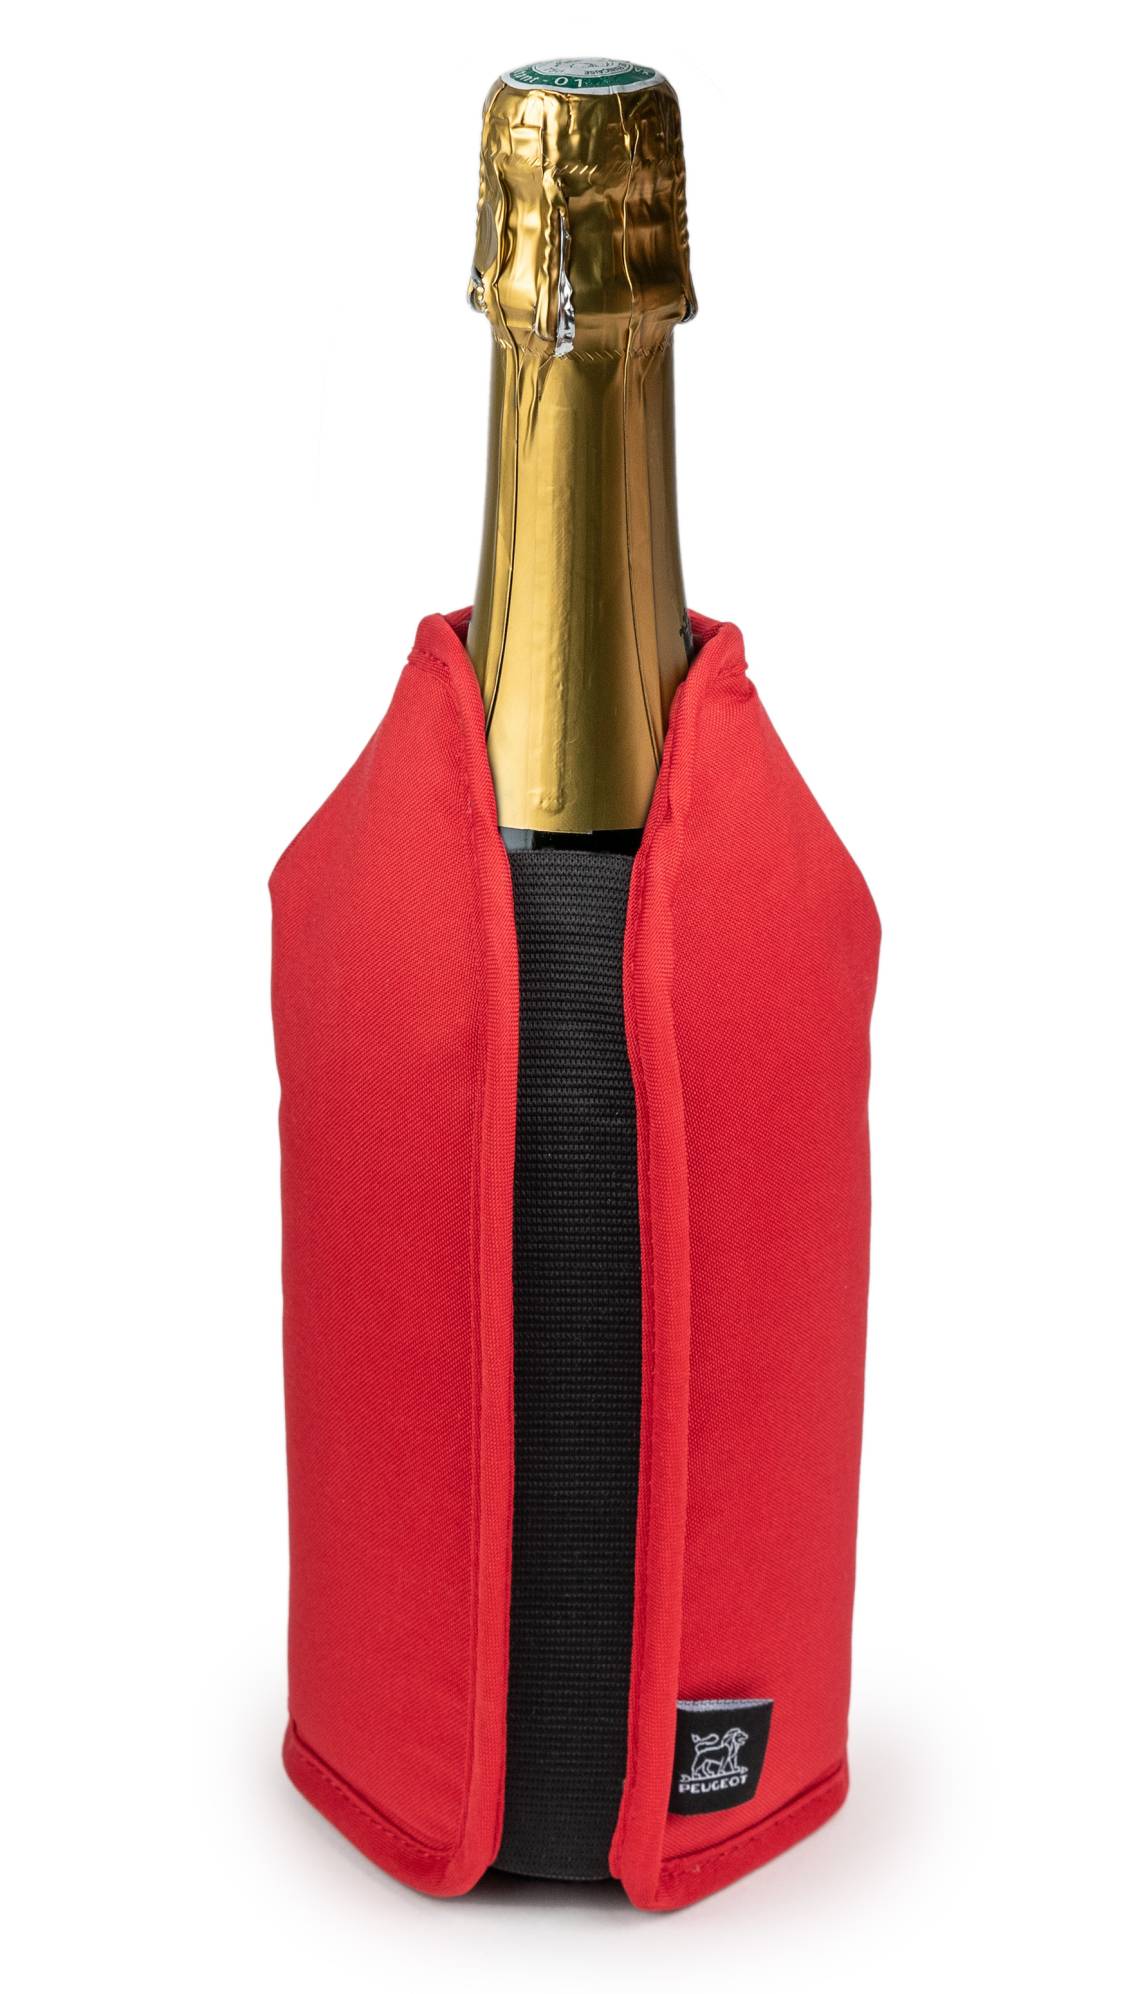 Peugeot - FRIZZ Kühlmanschette rot, passend für Champagner-Flaschen